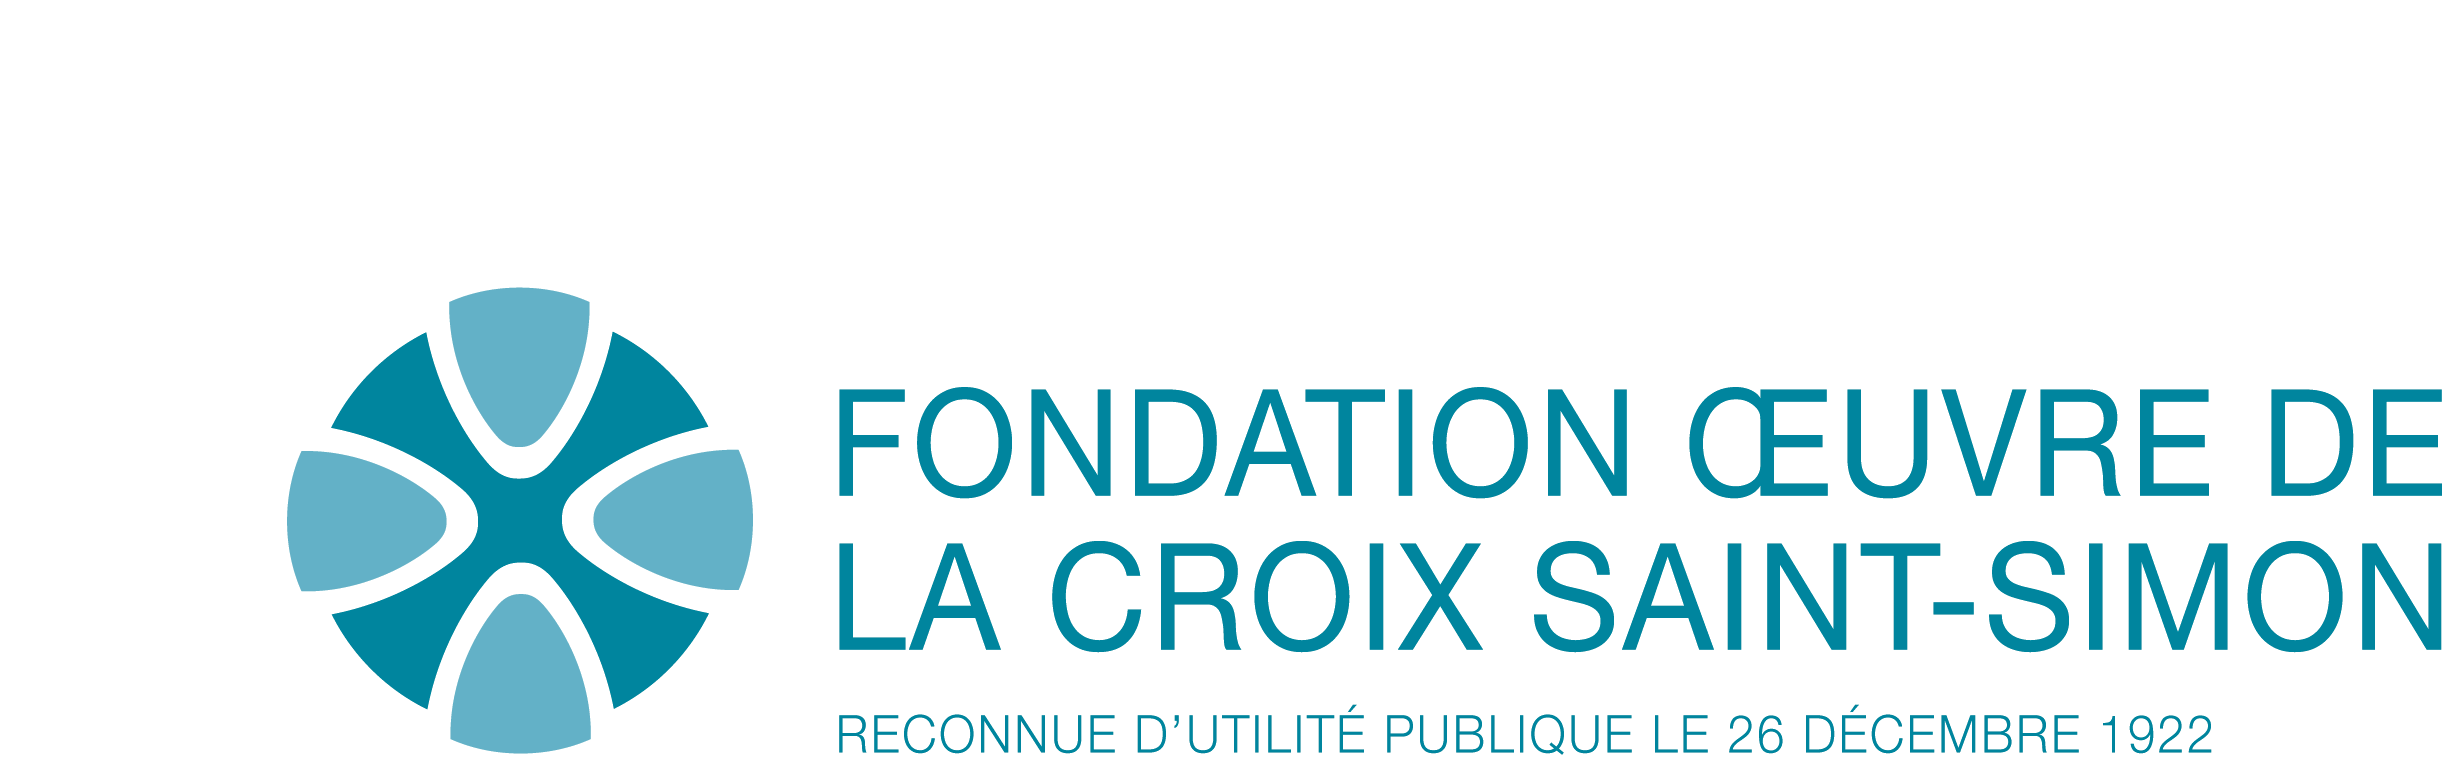 OFFRE D'EMPLOI: FORMATEUR (H/F) PUERICULTICE ( TEUR) Fondation œuvre Croix  Saint Simon Paris